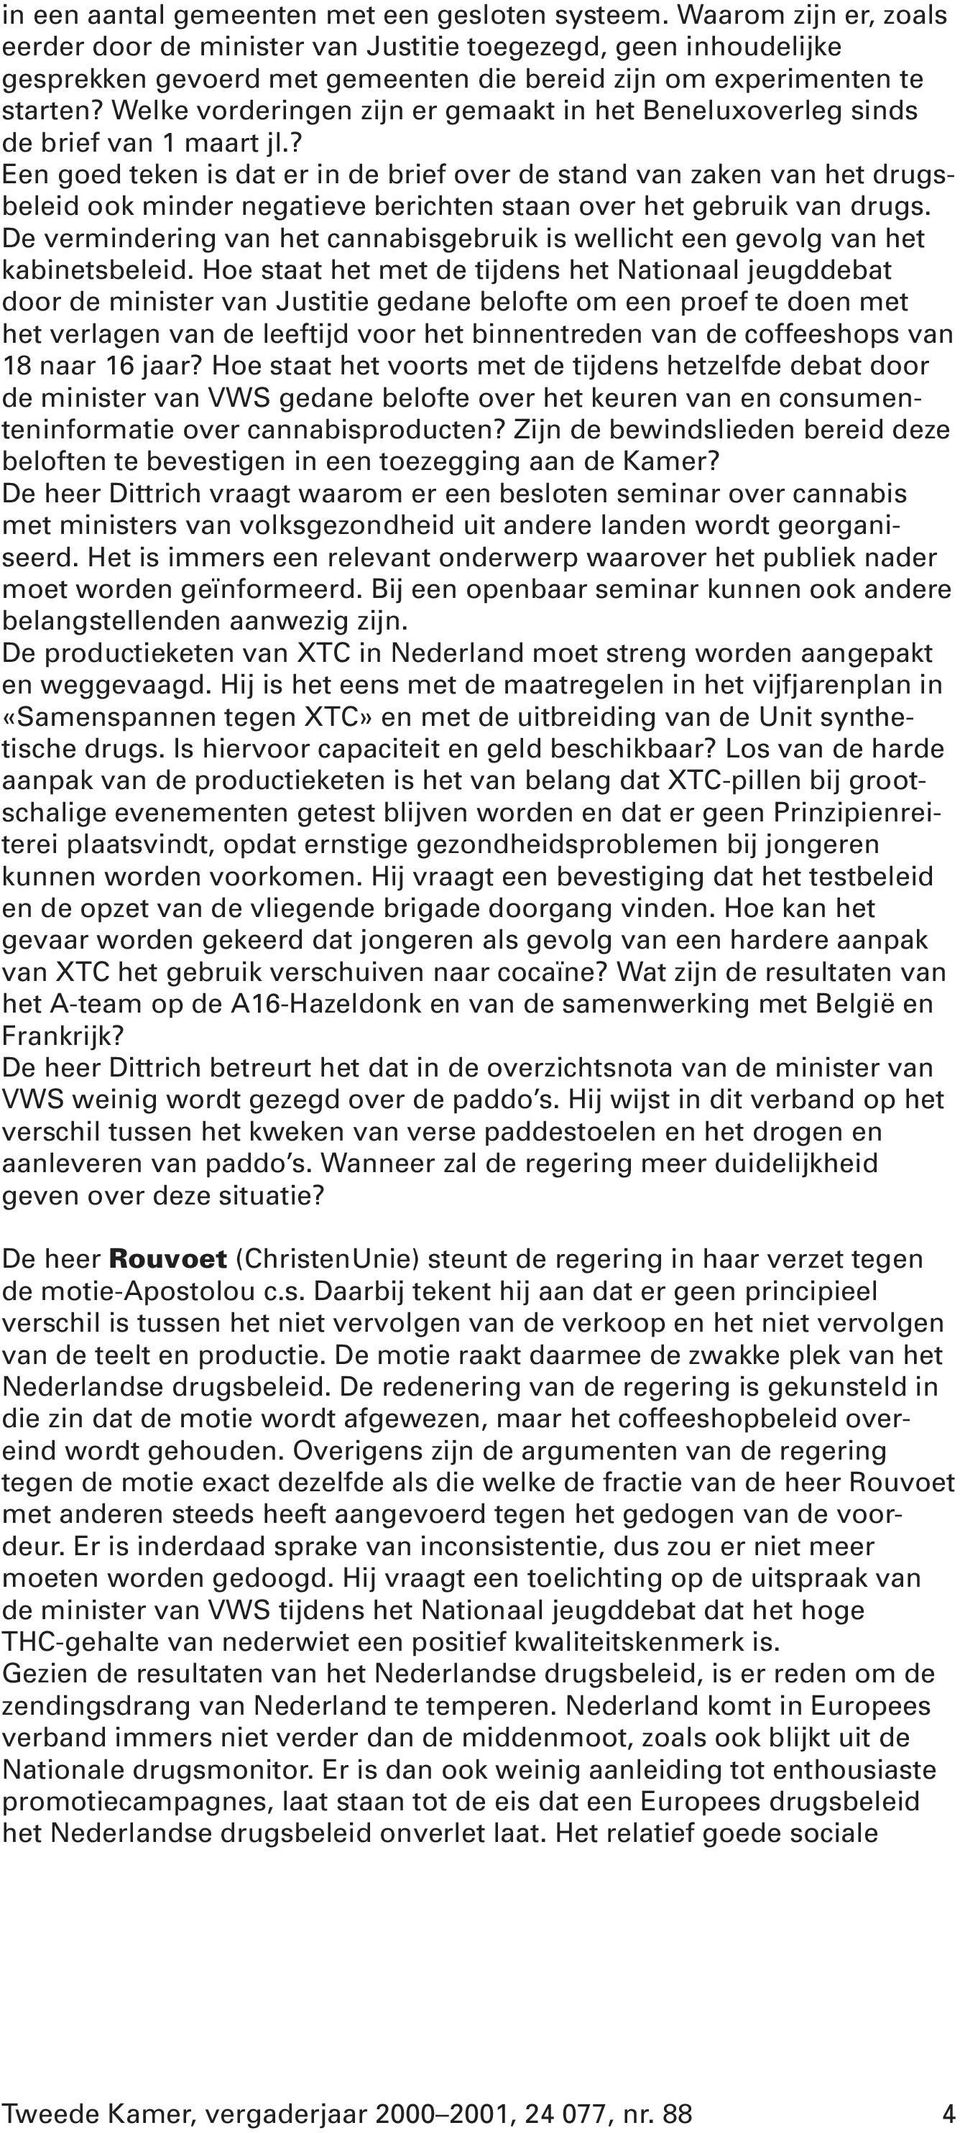 Welke vorderingen zijn er gemaakt in het Beneluxoverleg sinds de brief van 1 maart jl.